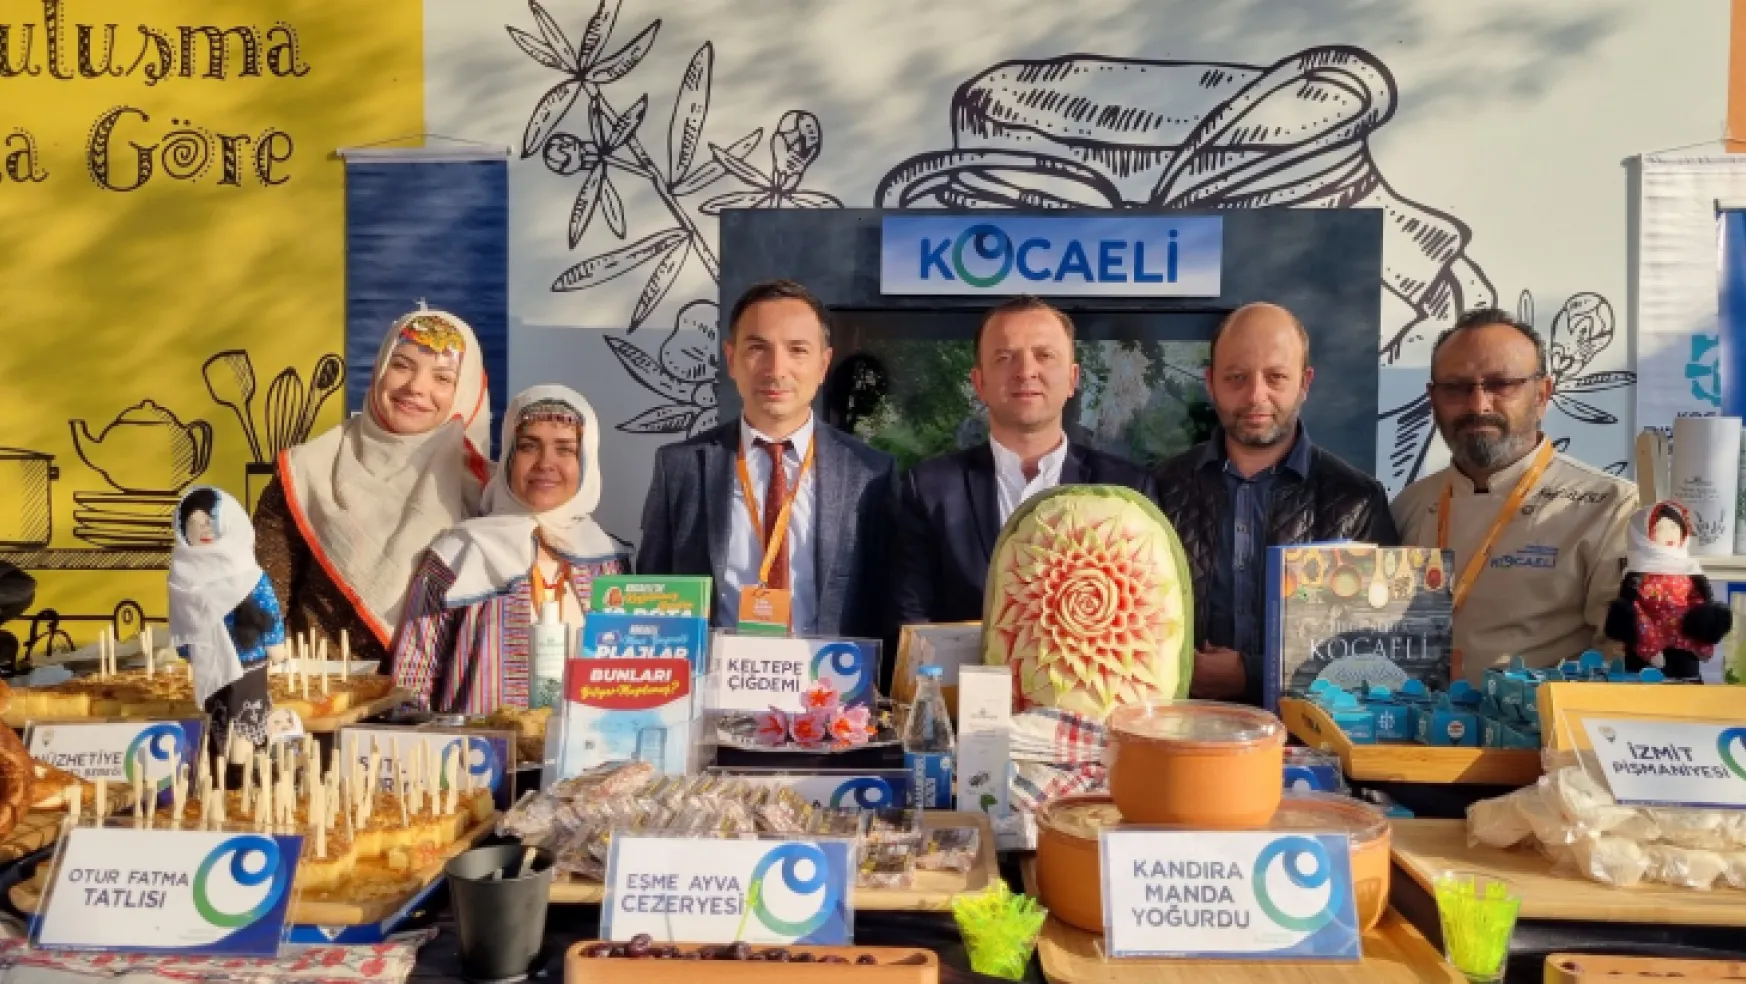 Kocaeli'nin turistik değerleri Ankara'da tanıtıldı